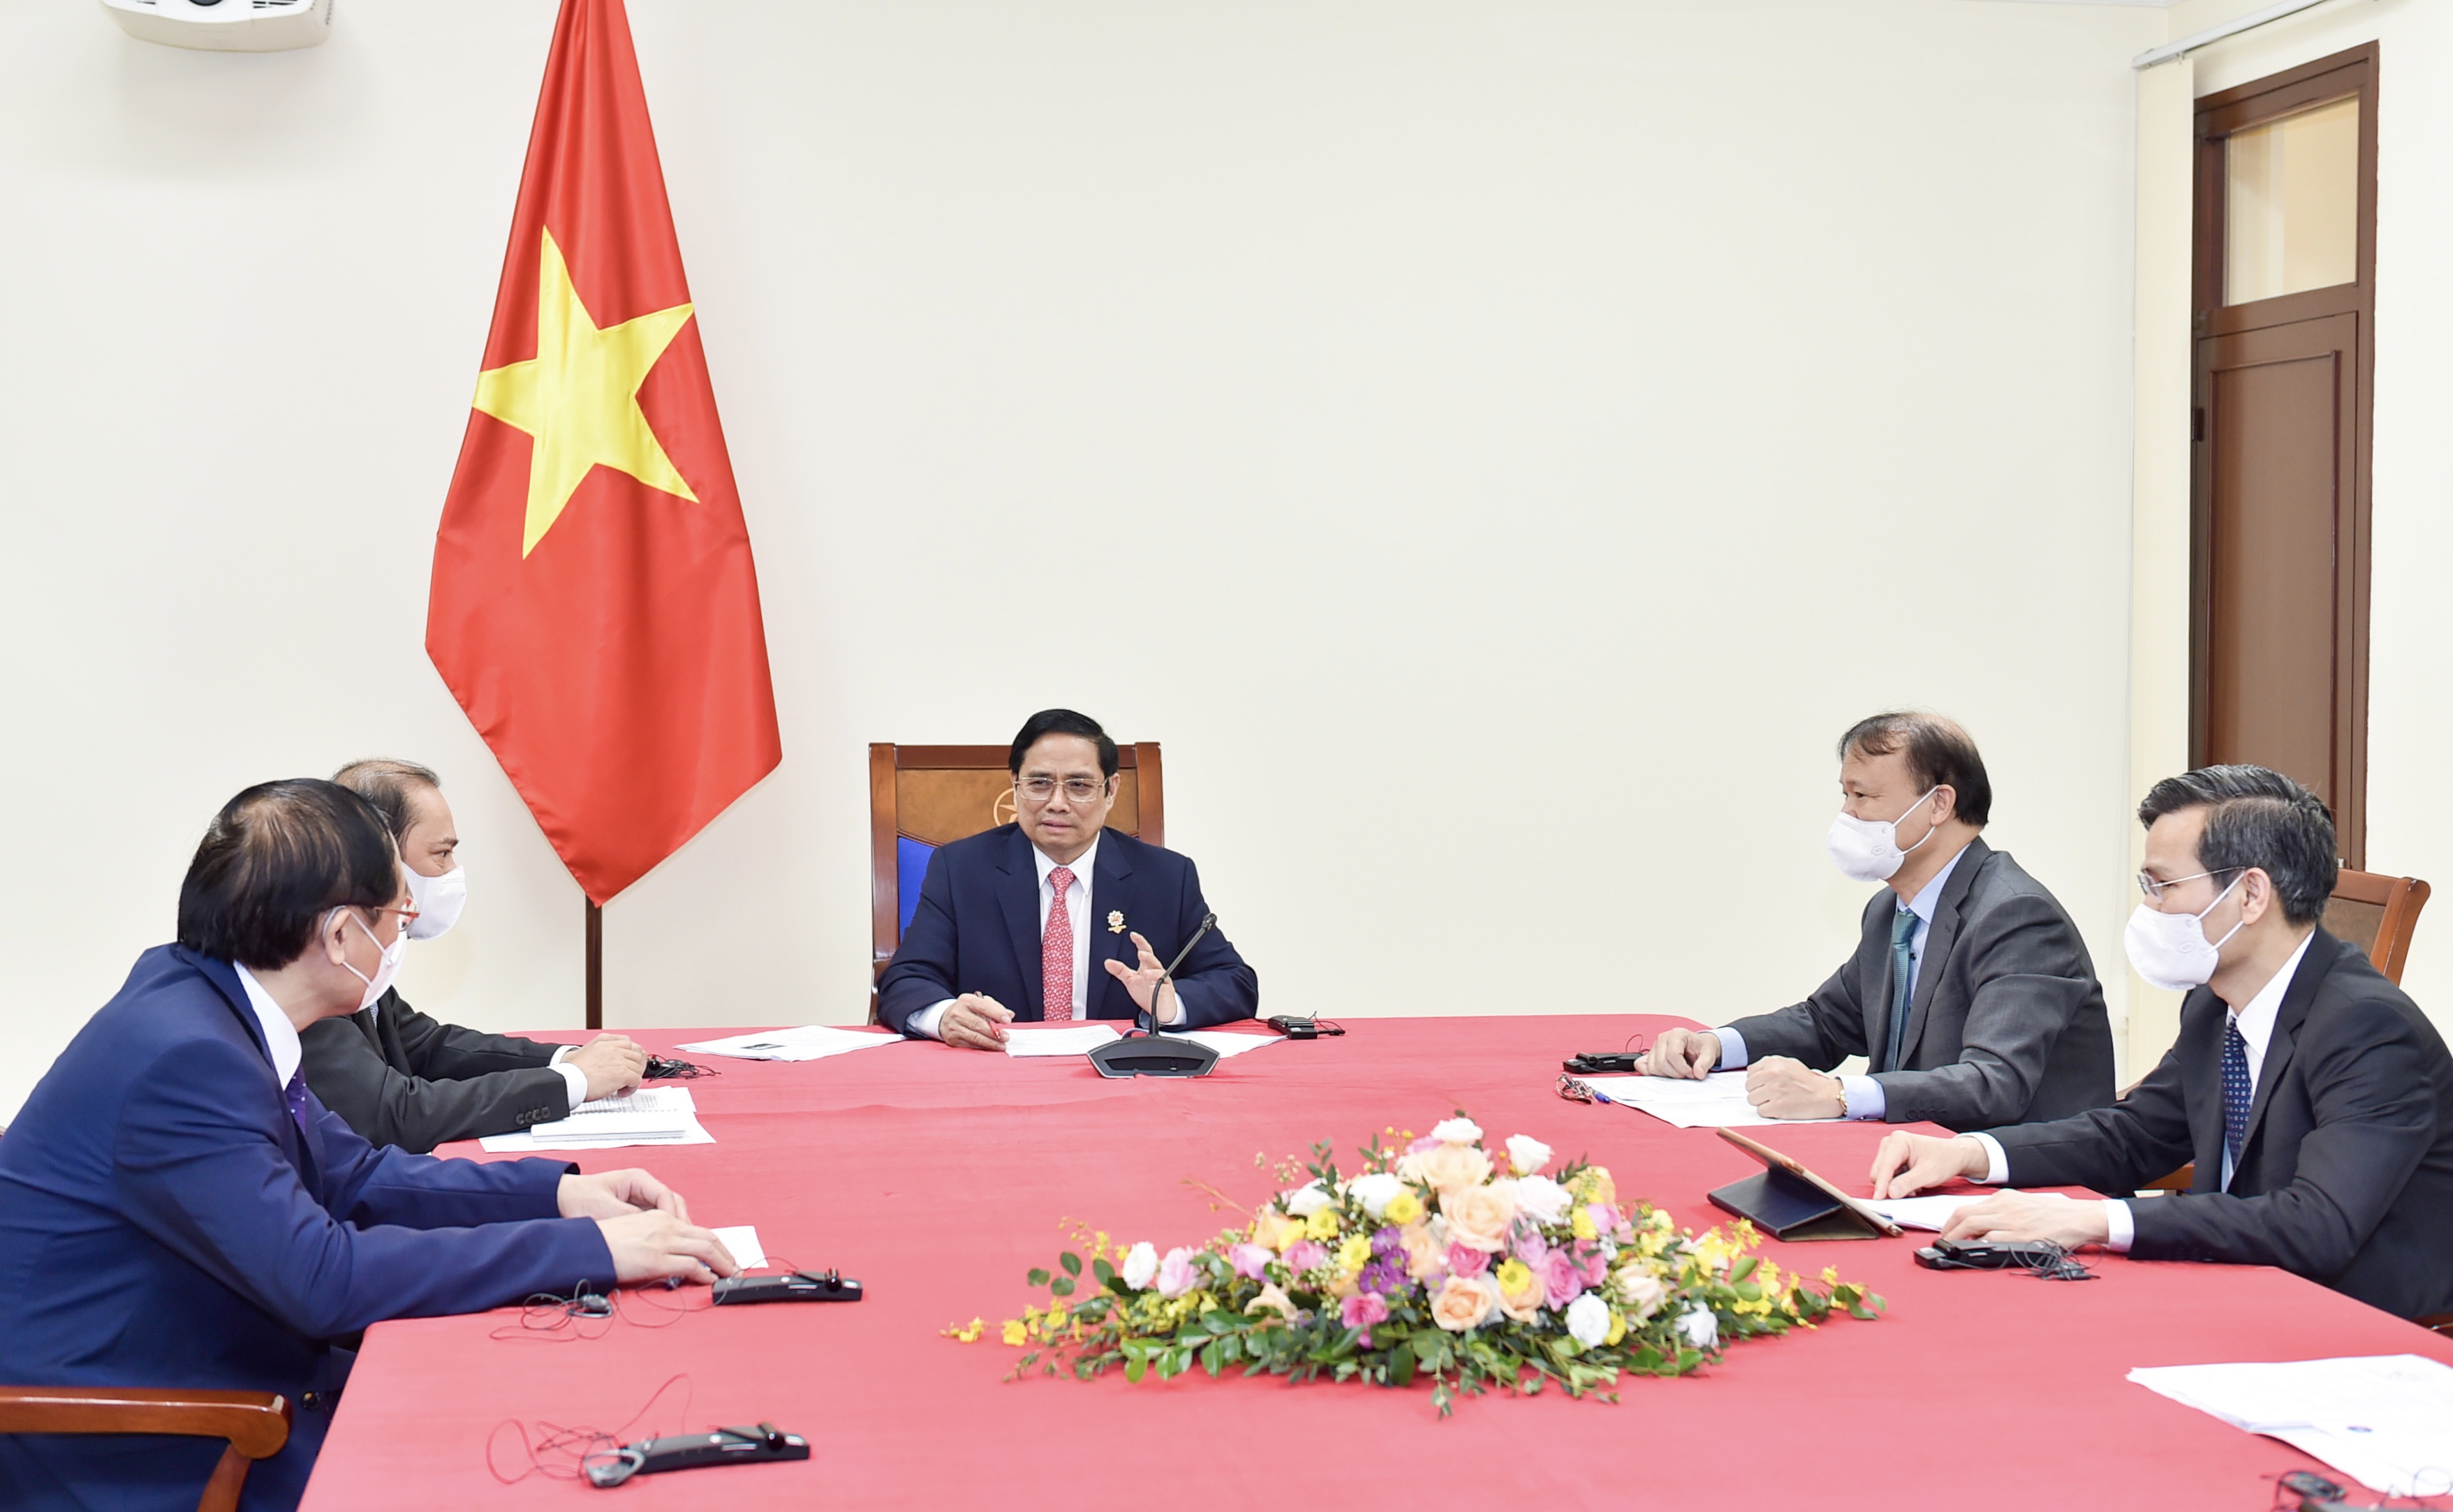 Thủ tướng Phạm Minh Chính tại buổi điện đàm. Ảnh: VGP/Nhật Bắc